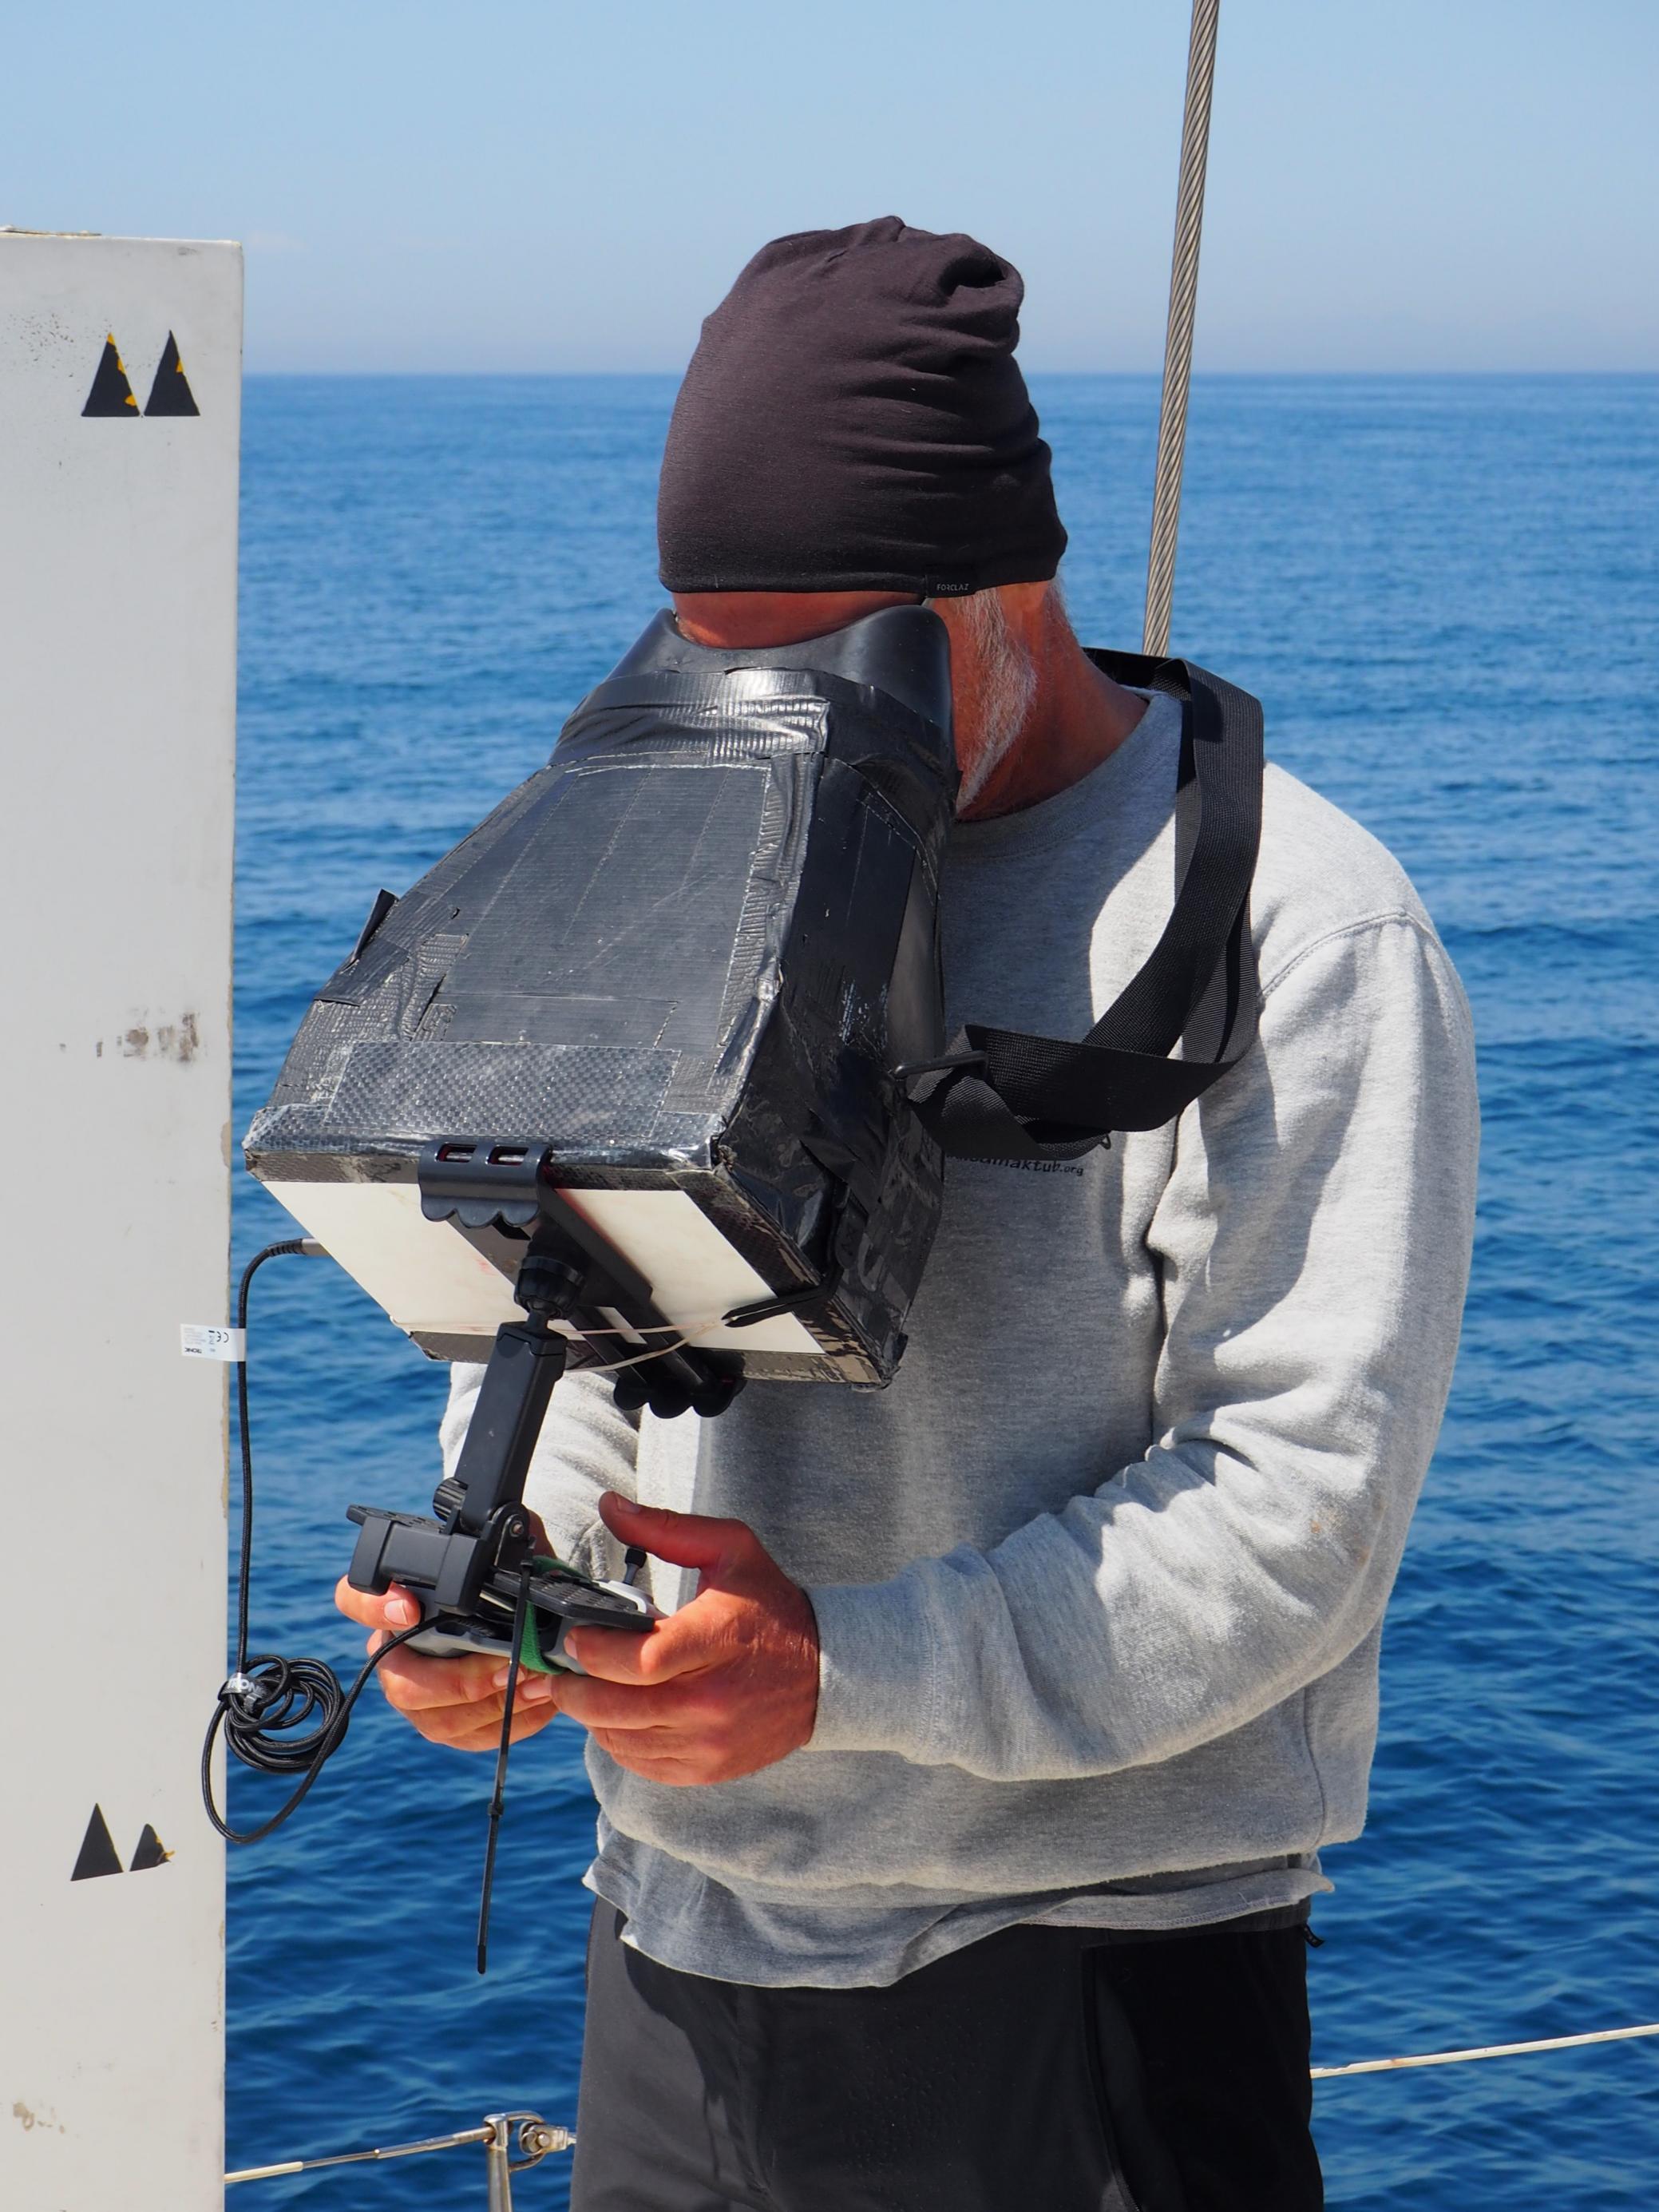 Mann mit schwarzer Mütze und einem grauen Sweatshirt mit Aufdruck: Edmaktub.org „Projekte Rorqual“ steuert eine Drohne